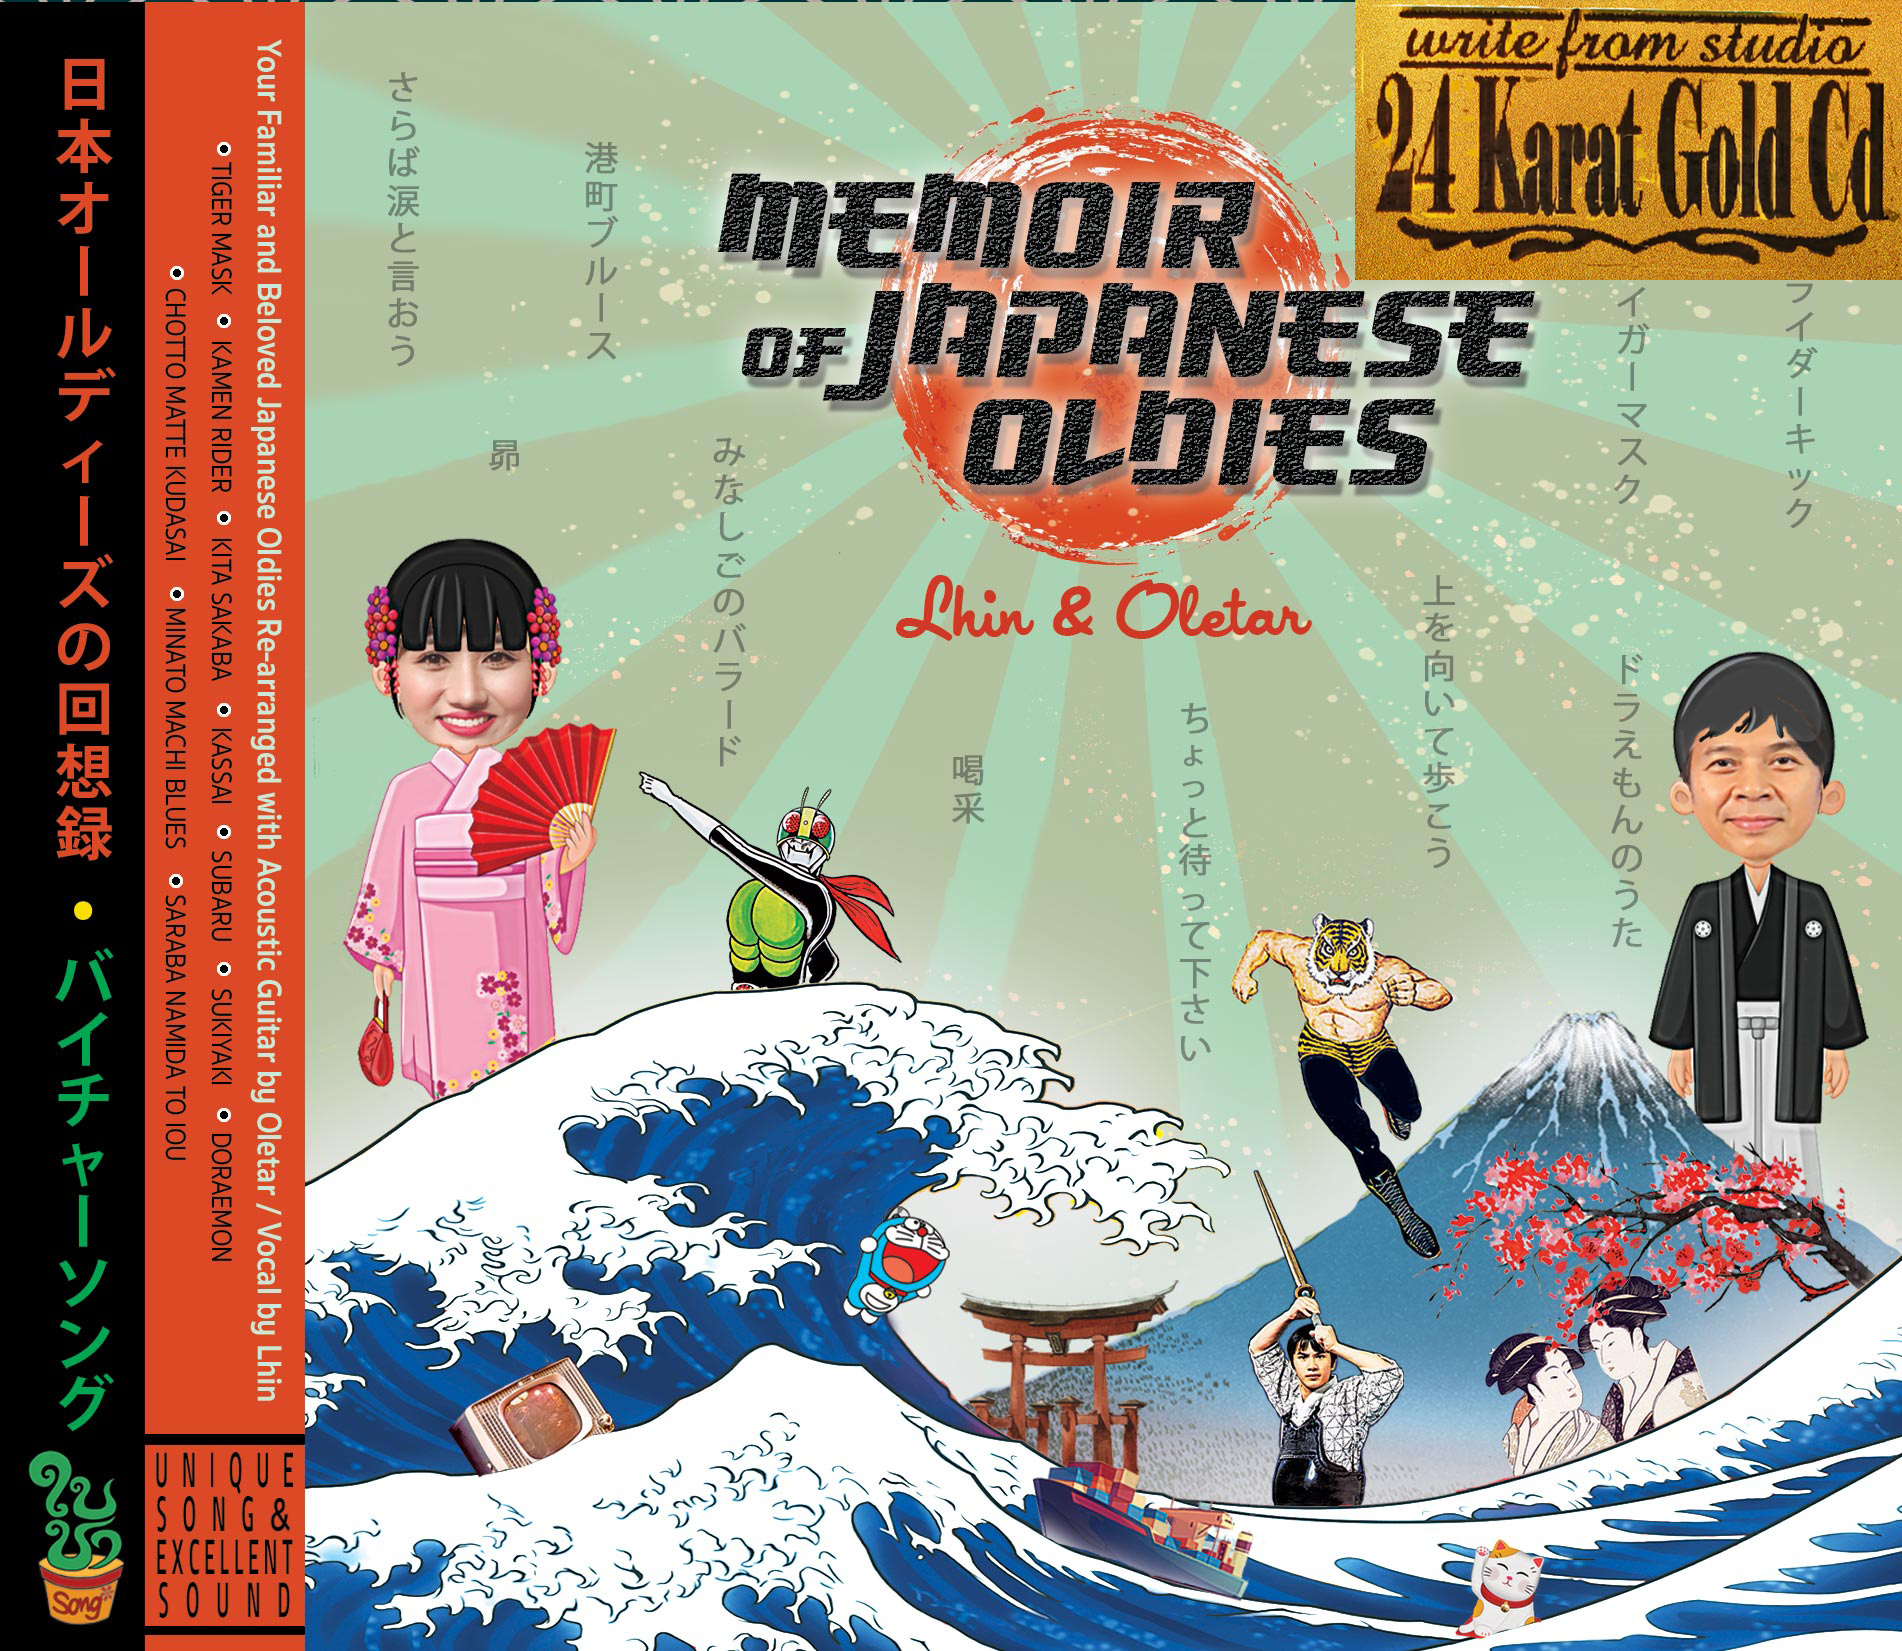 1:1 24K Gold CD Memoir of Japanese Oldies : Lhin&Oletar